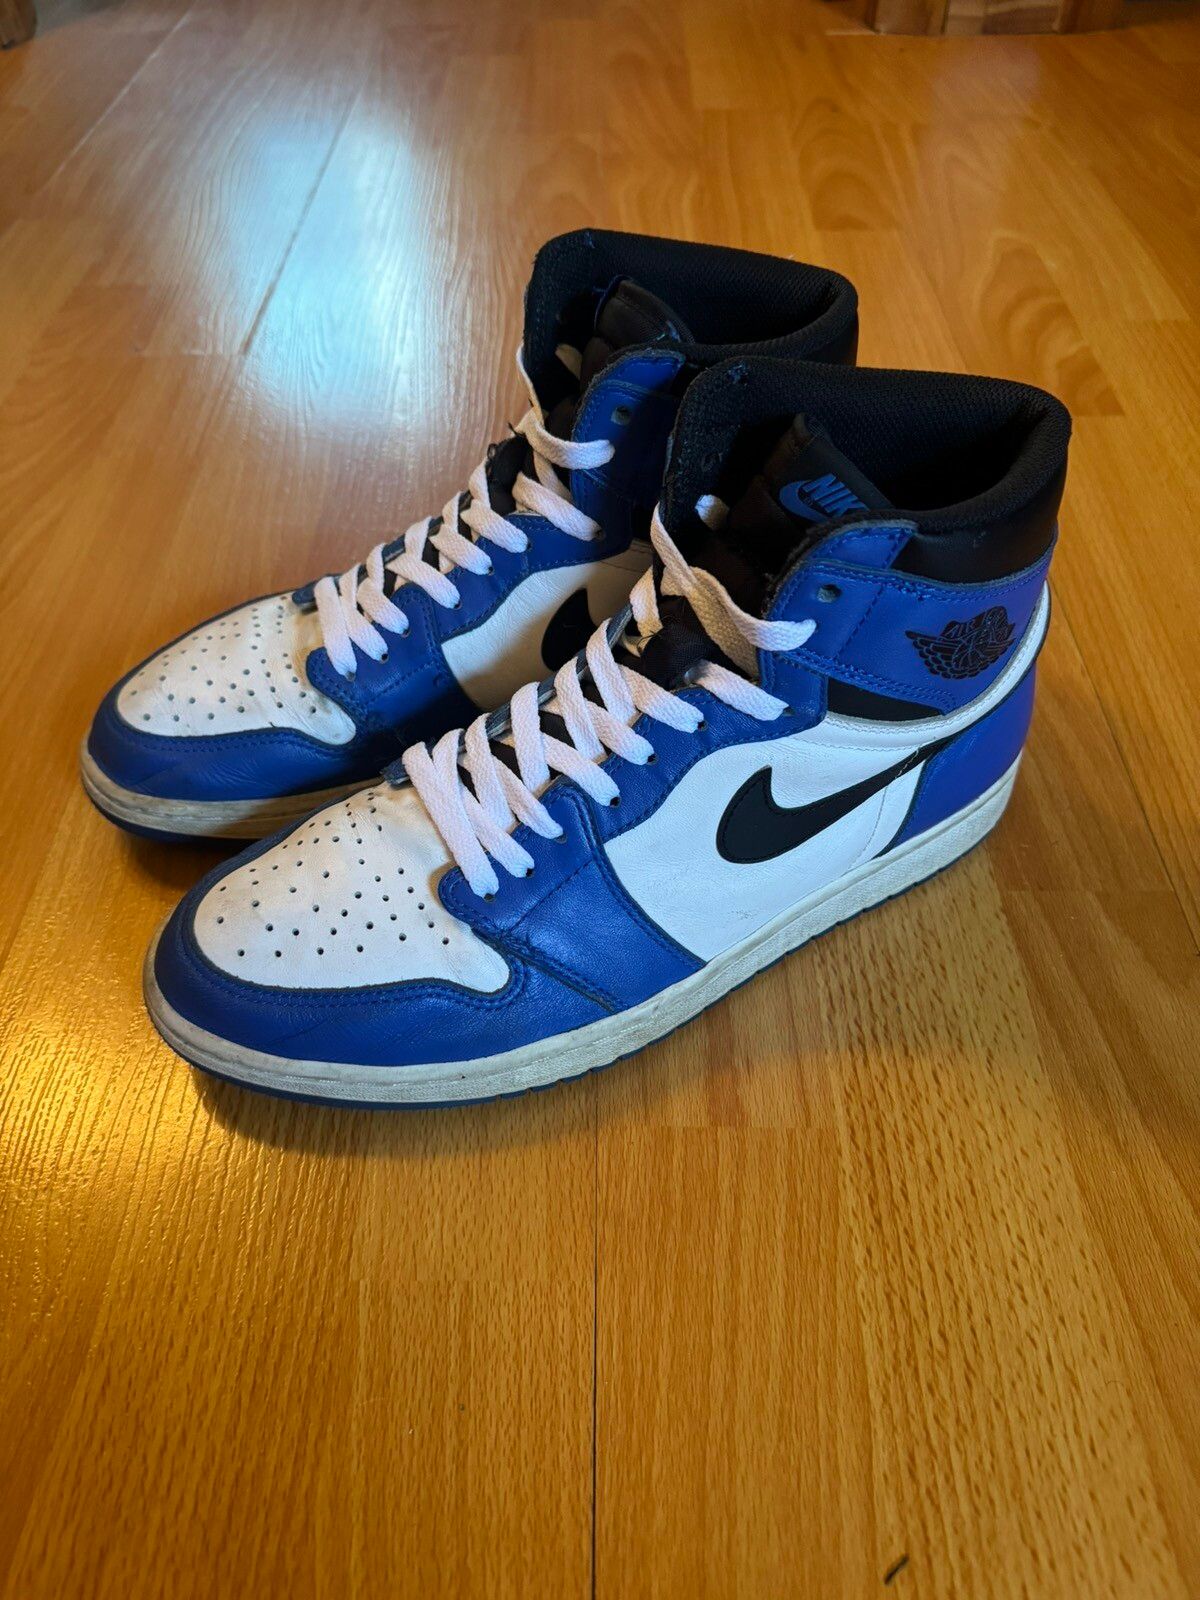 Pre-owned Jordan Nike Air Jordan 1 Retro High Og 'game Royal' - 555088 403 Shoes In Blue